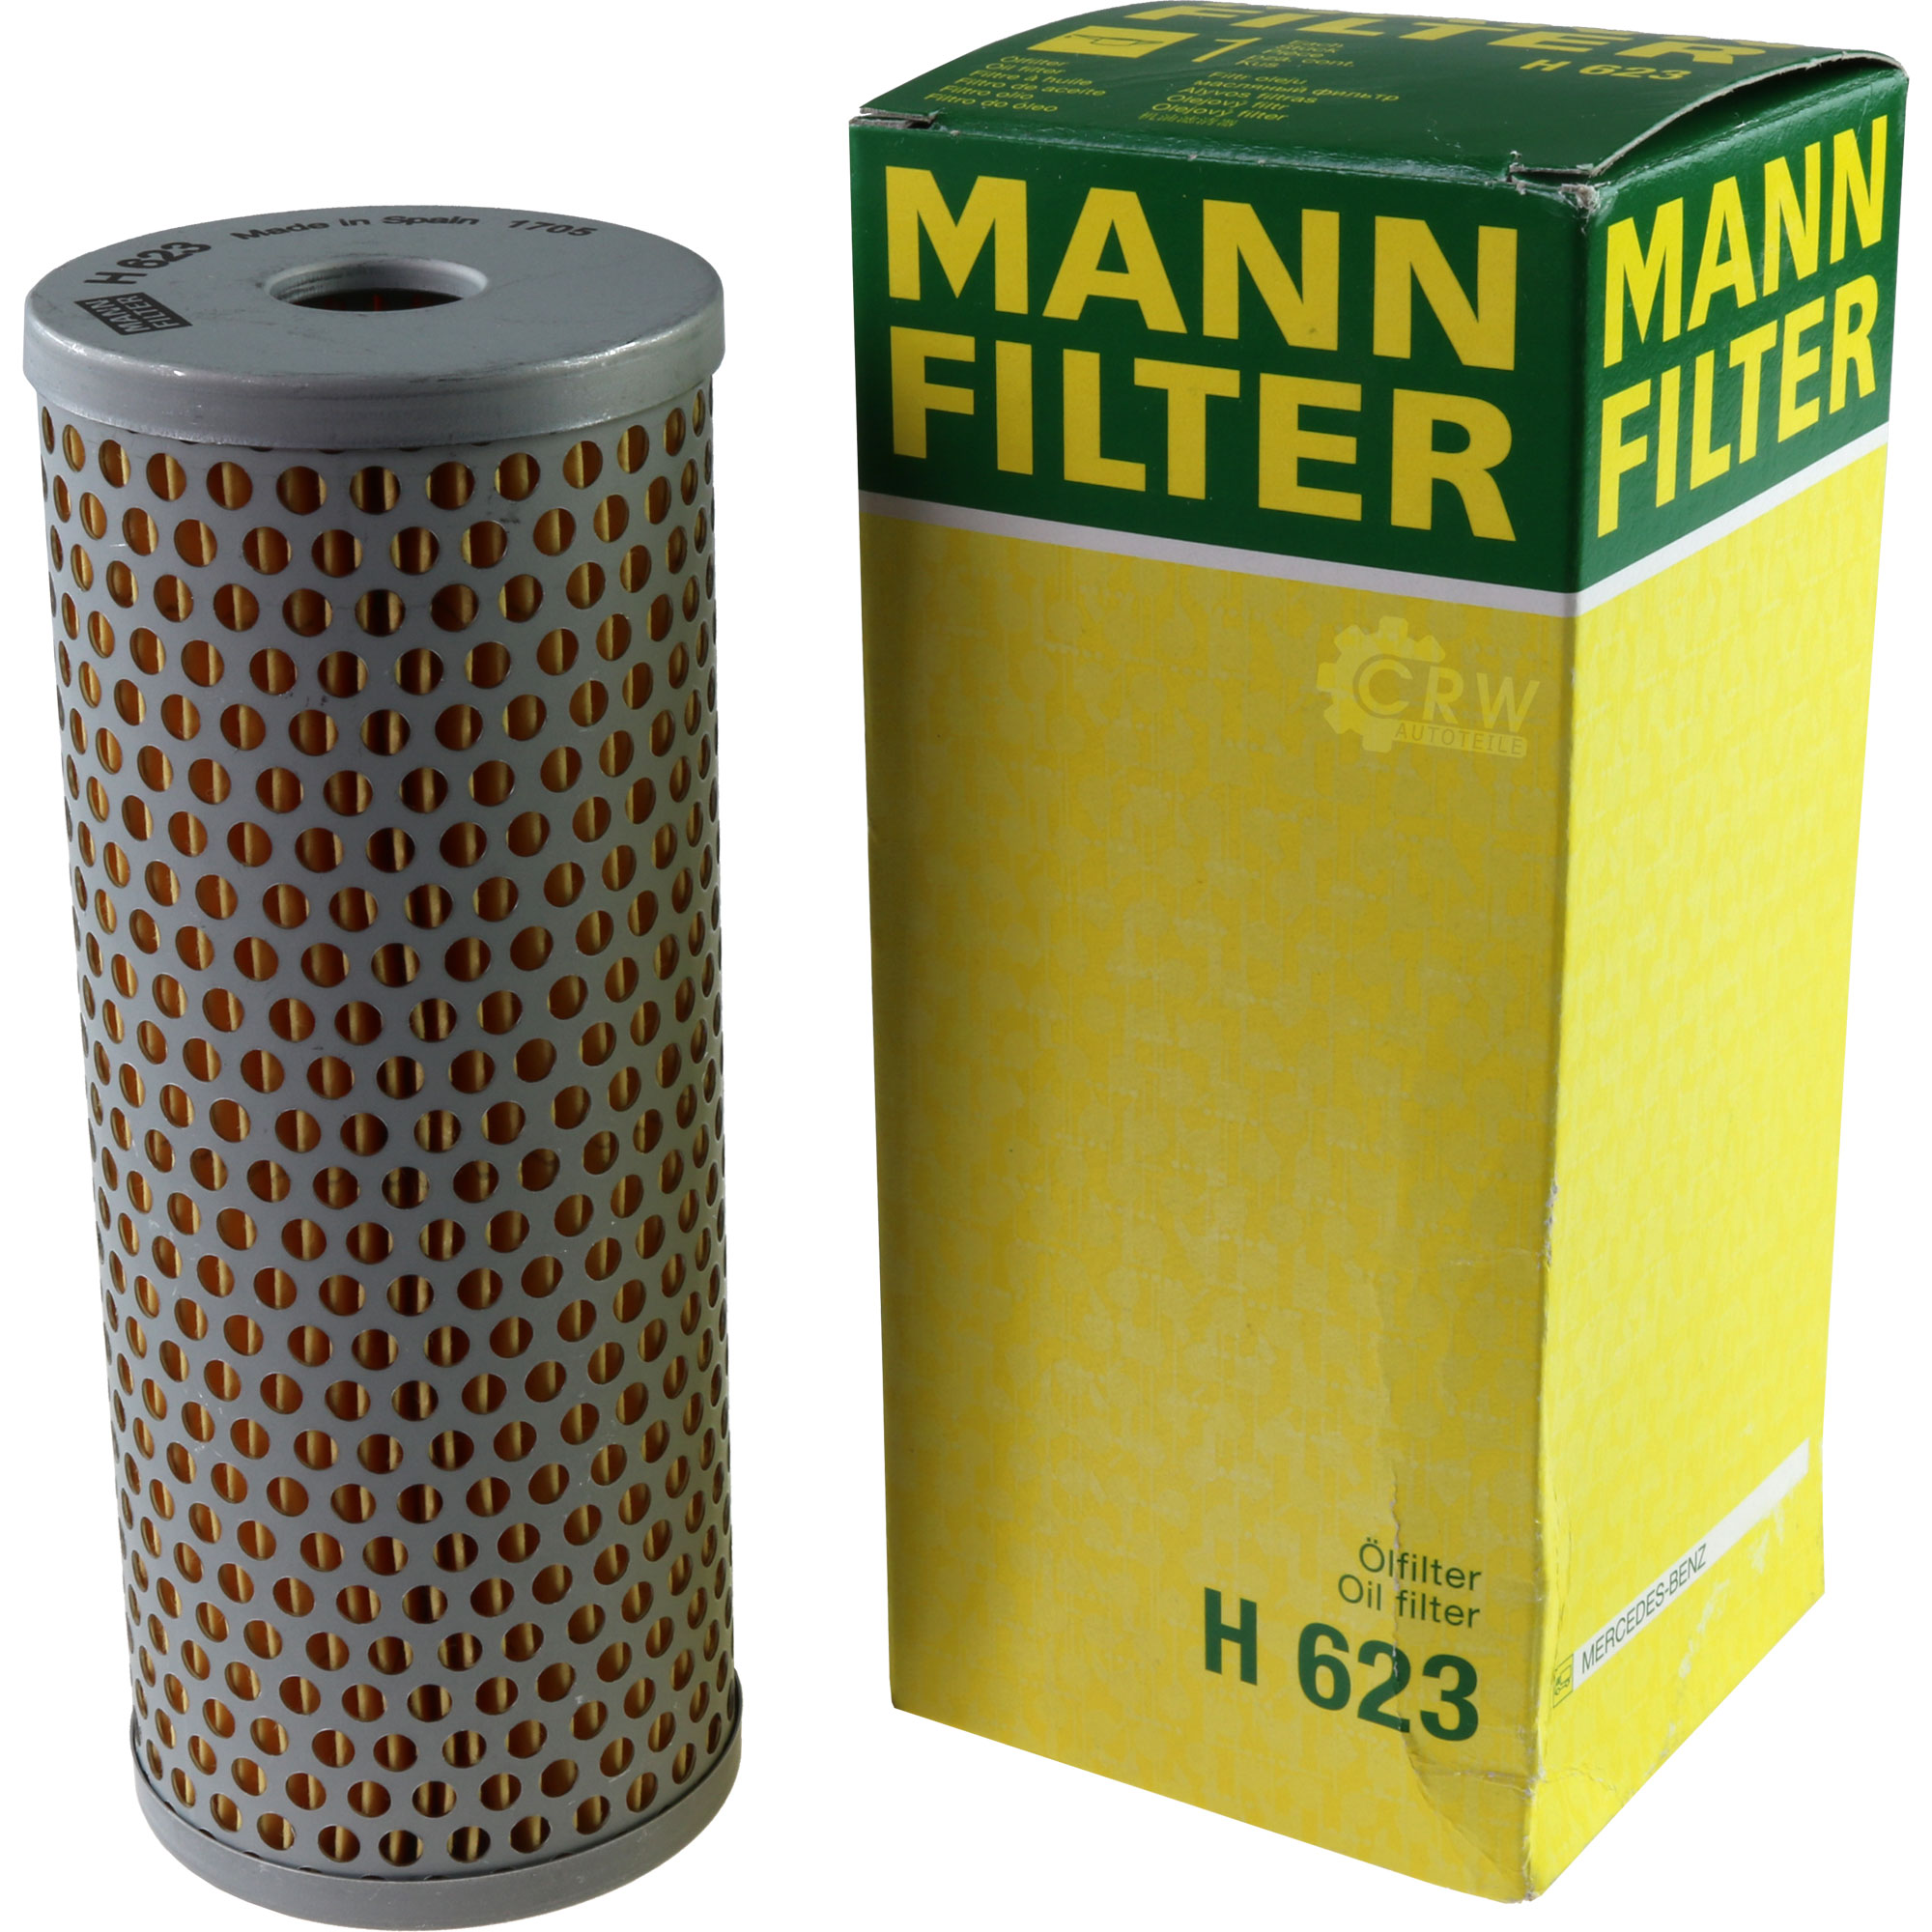 MANN-FILTER H 623 Hydraulikfilter für Lenkung